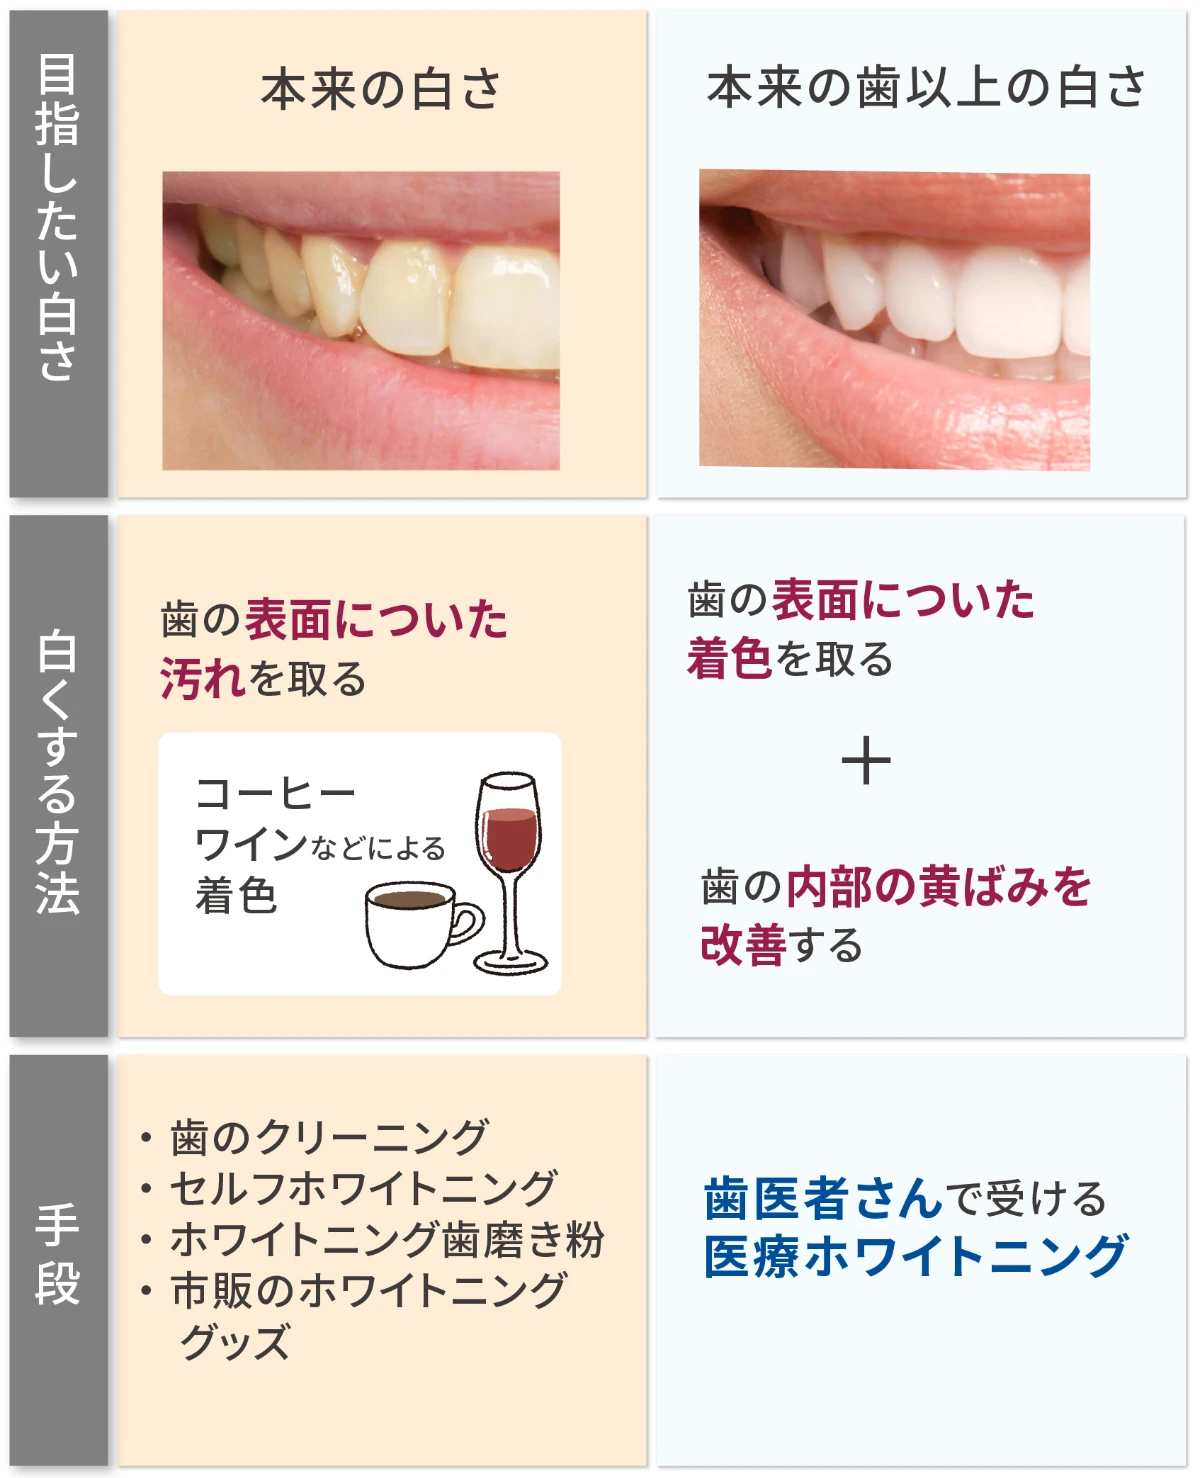 目指したい白さ・歯を白くする方法・歯を白くする手段に関する比較表 